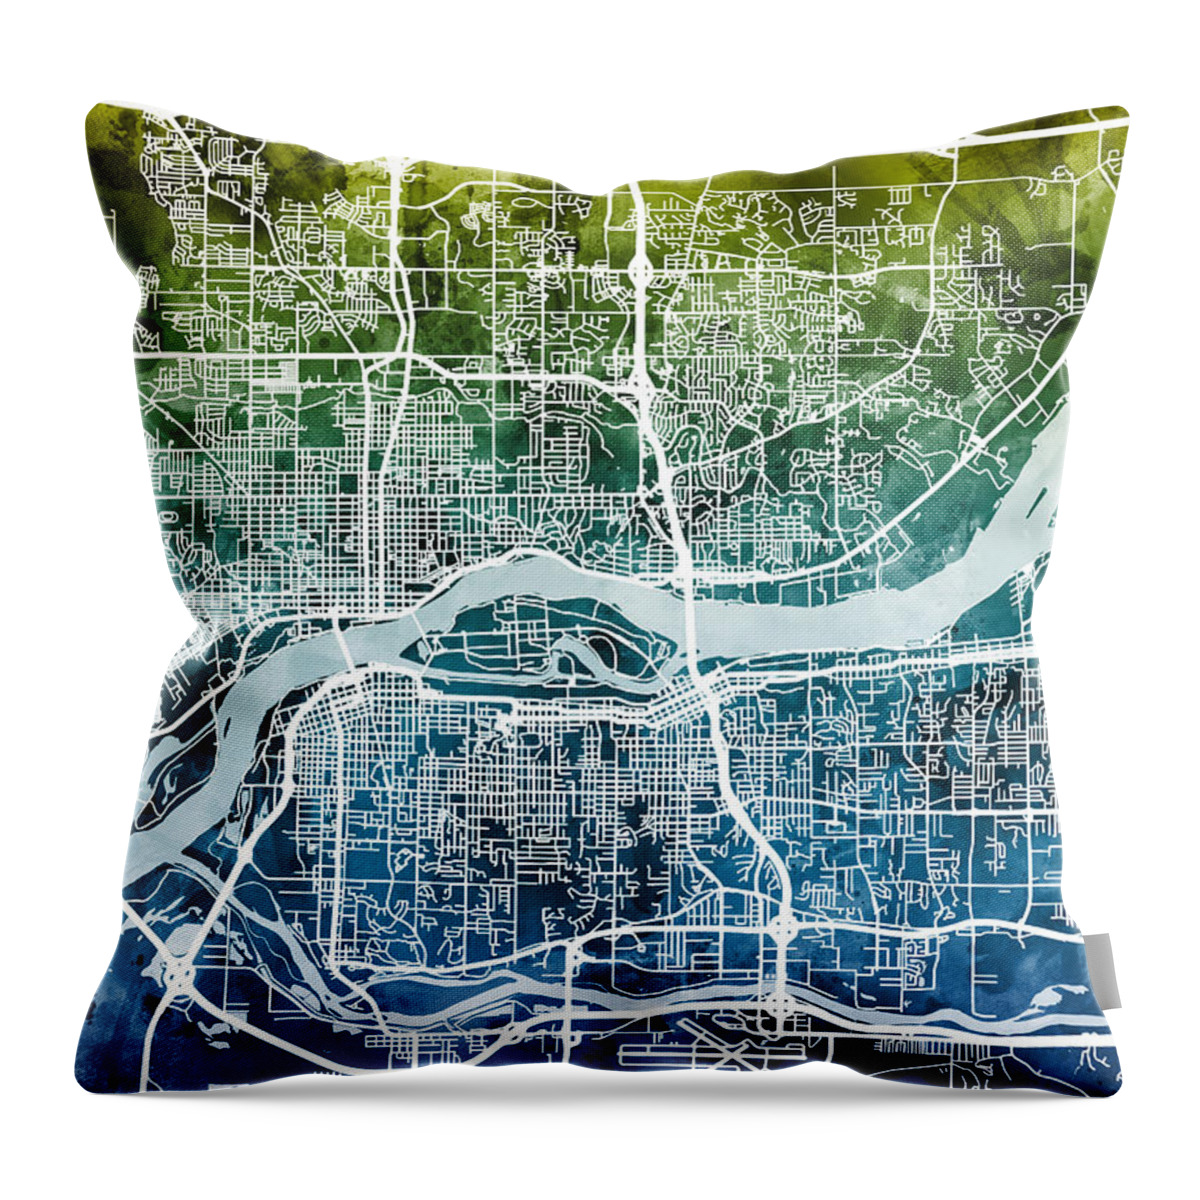 Street Map Throw Pillow featuring the digital art Quad Cities Street Map #7 by Michael Tompsett